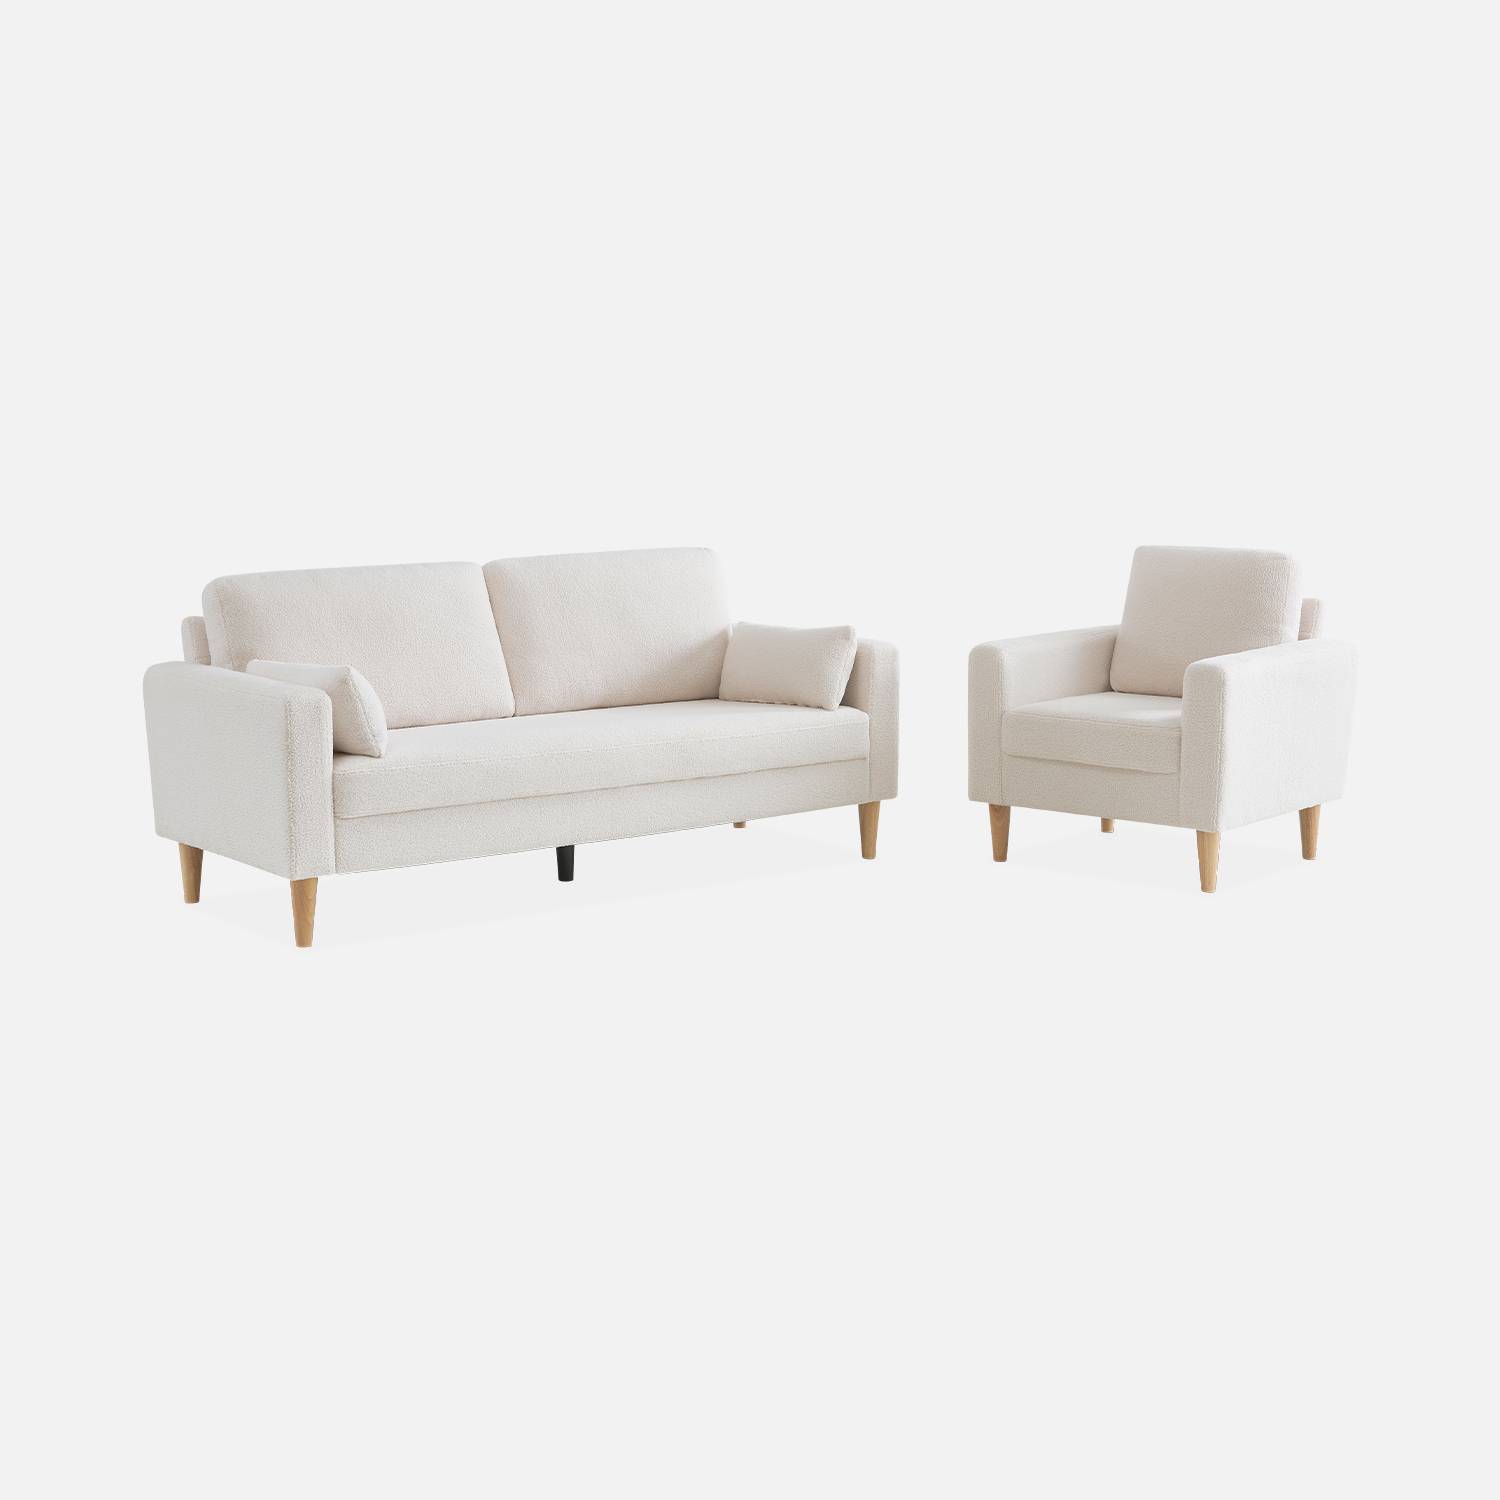 Witte fauteuil van boucléstof - Bjorn - 1-zits sofa, rechte houten poten Photo6